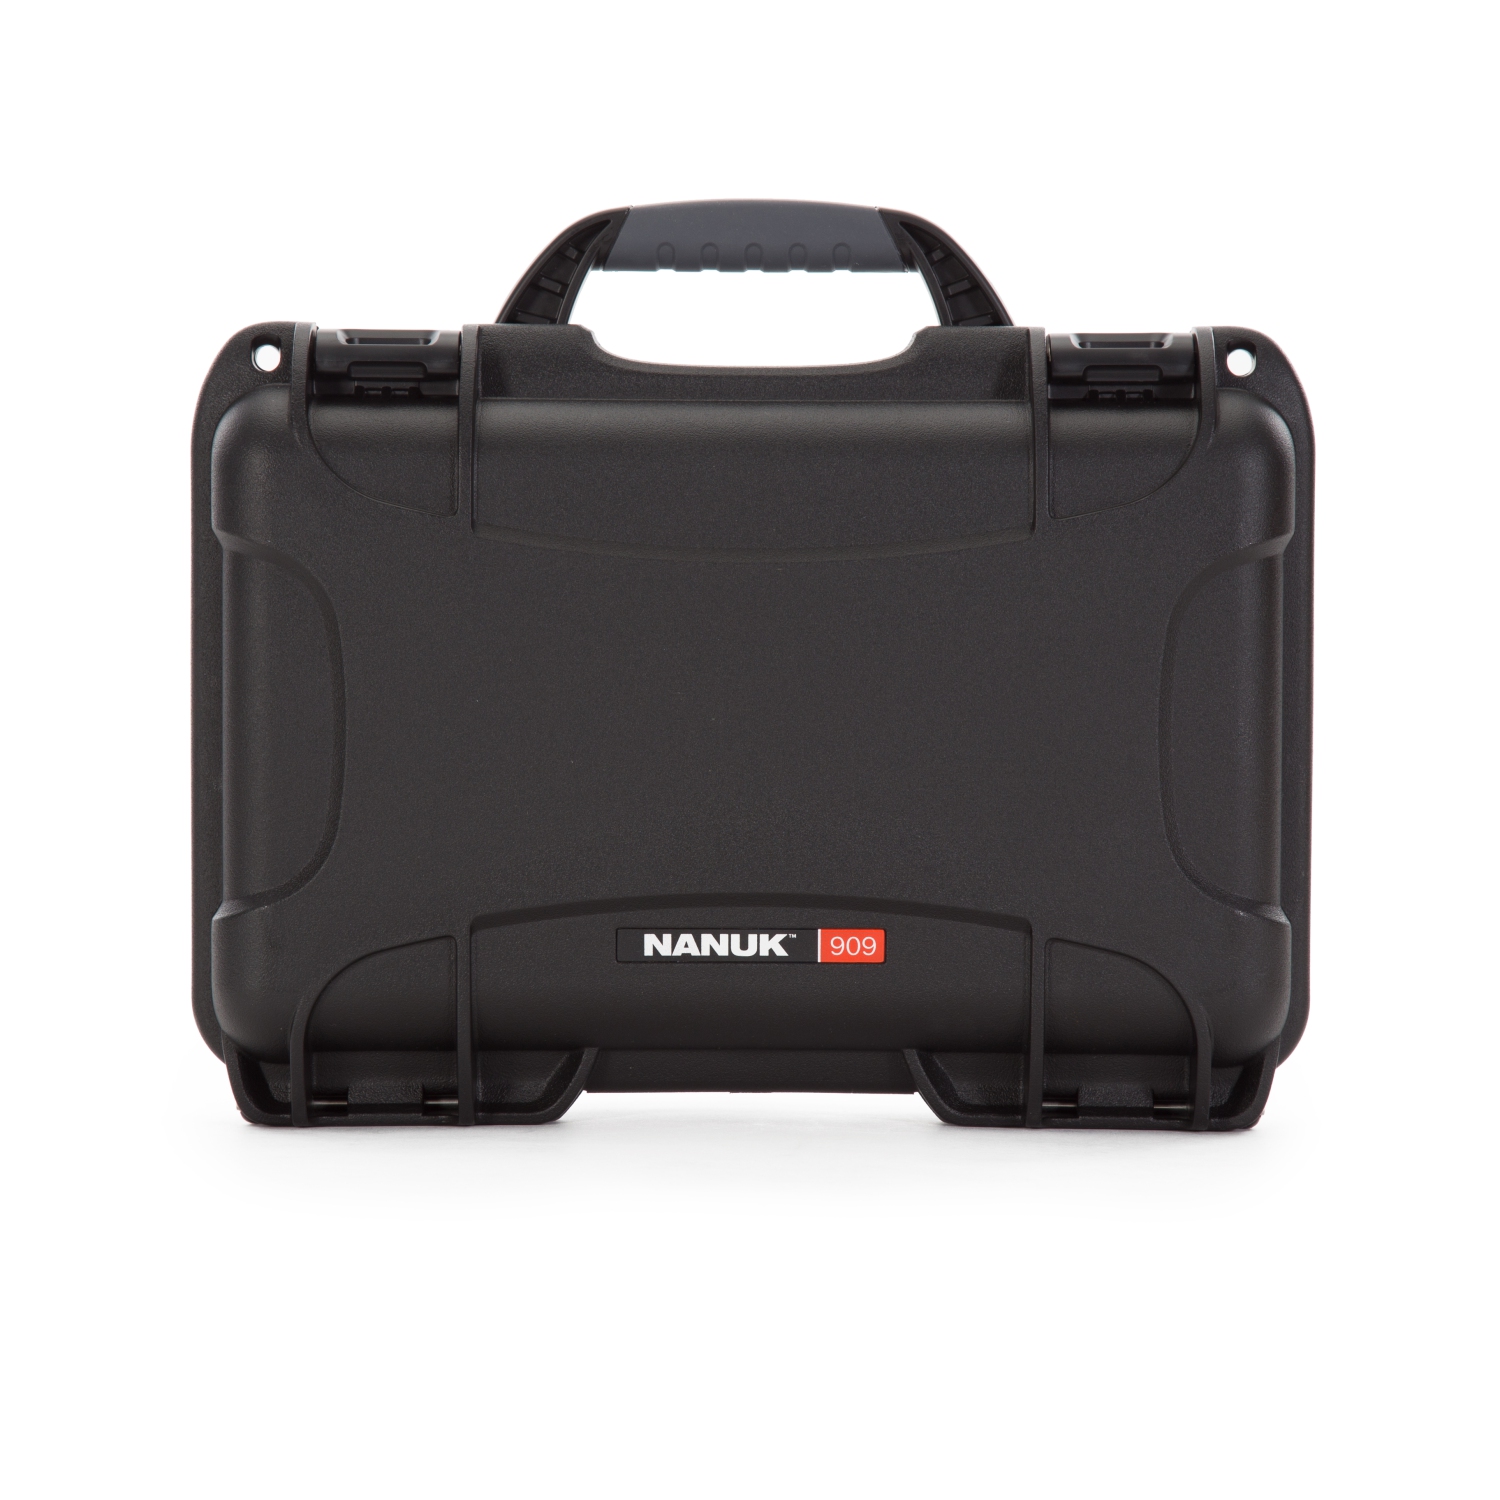 Nanuk 909 Waterproof Hard Case with Foam Insert - Black